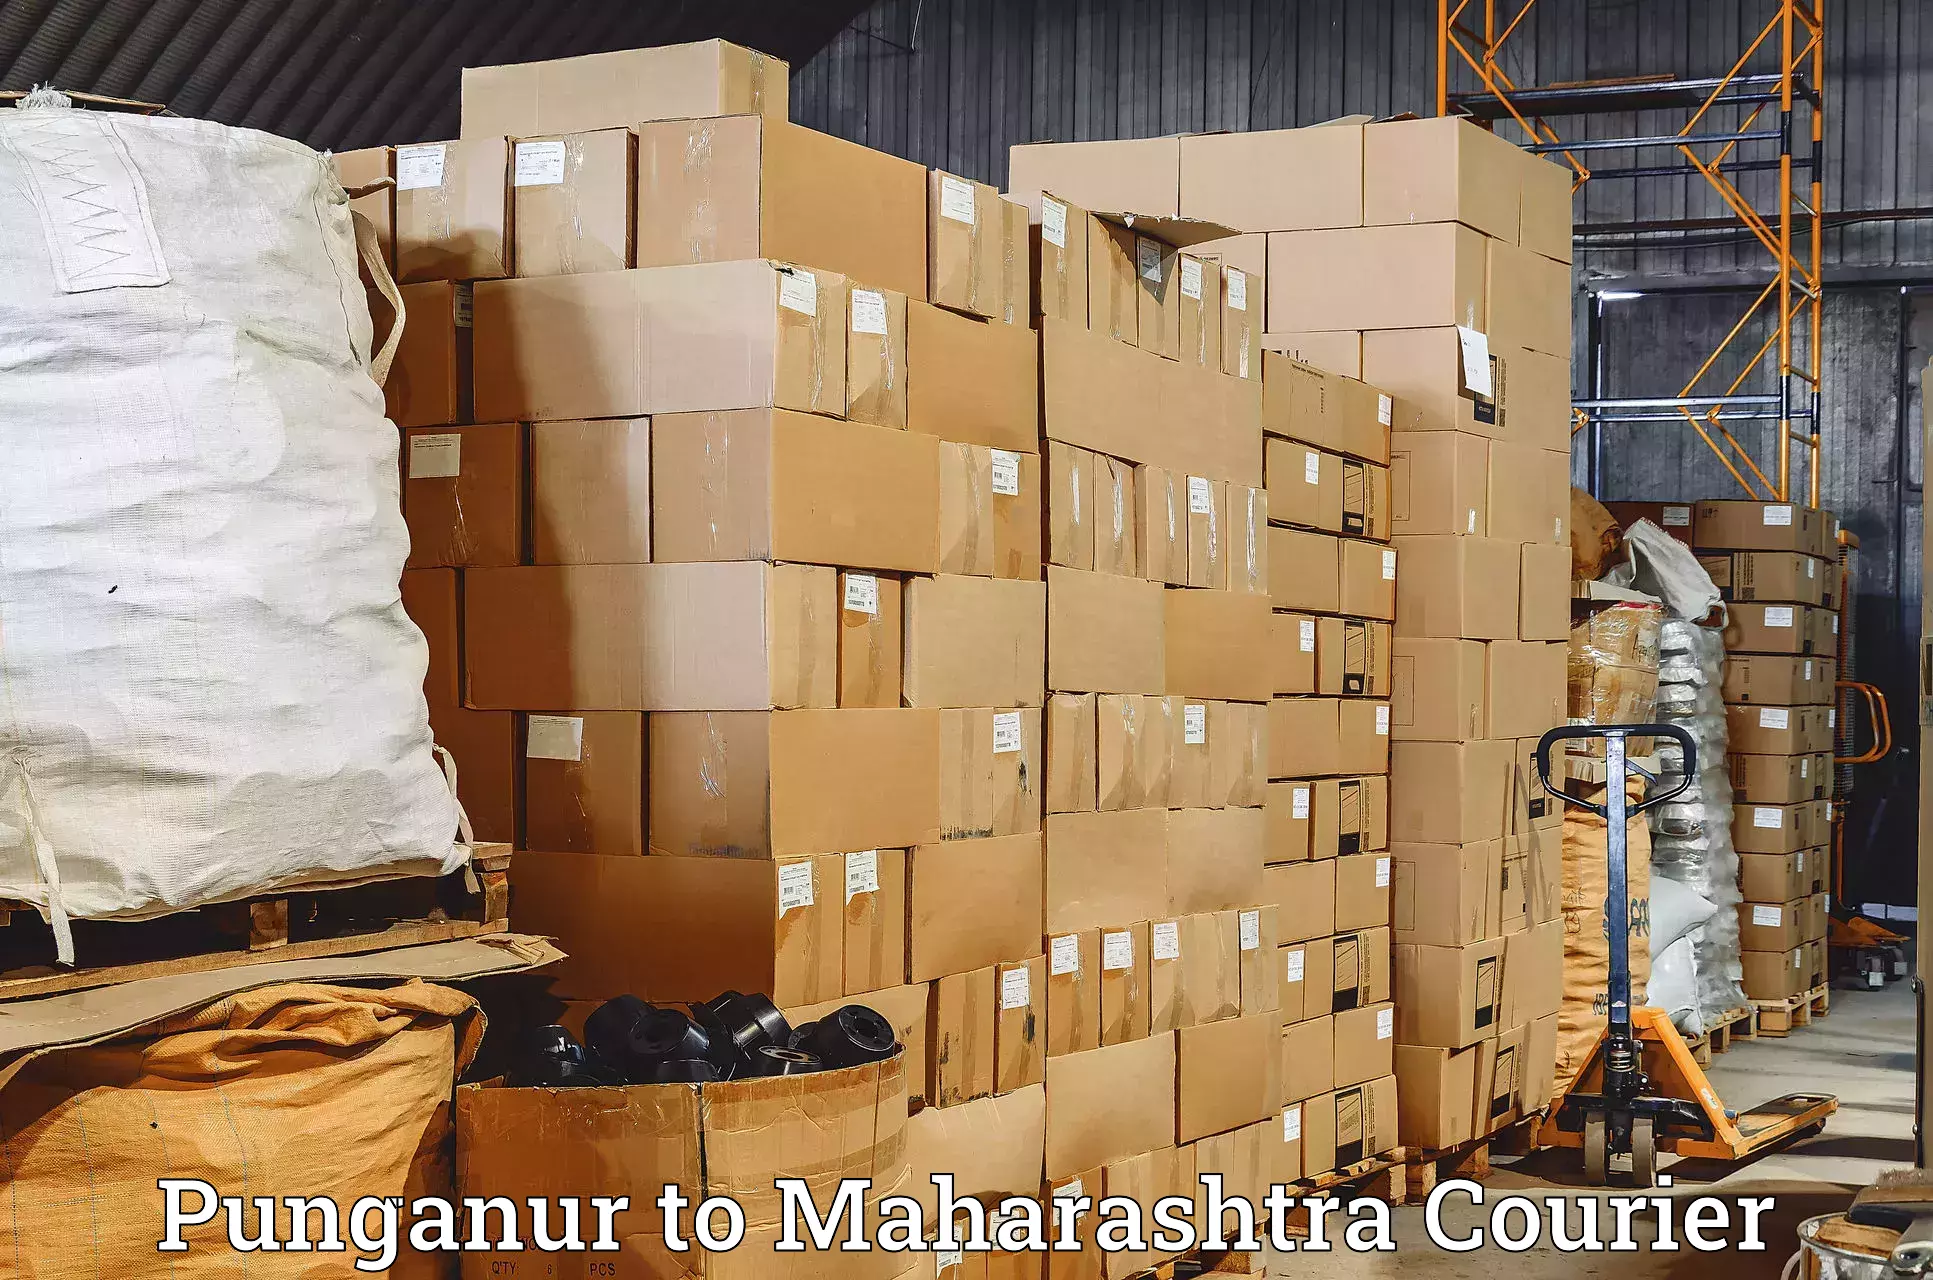 Express logistics service Punganur to Maharashtra